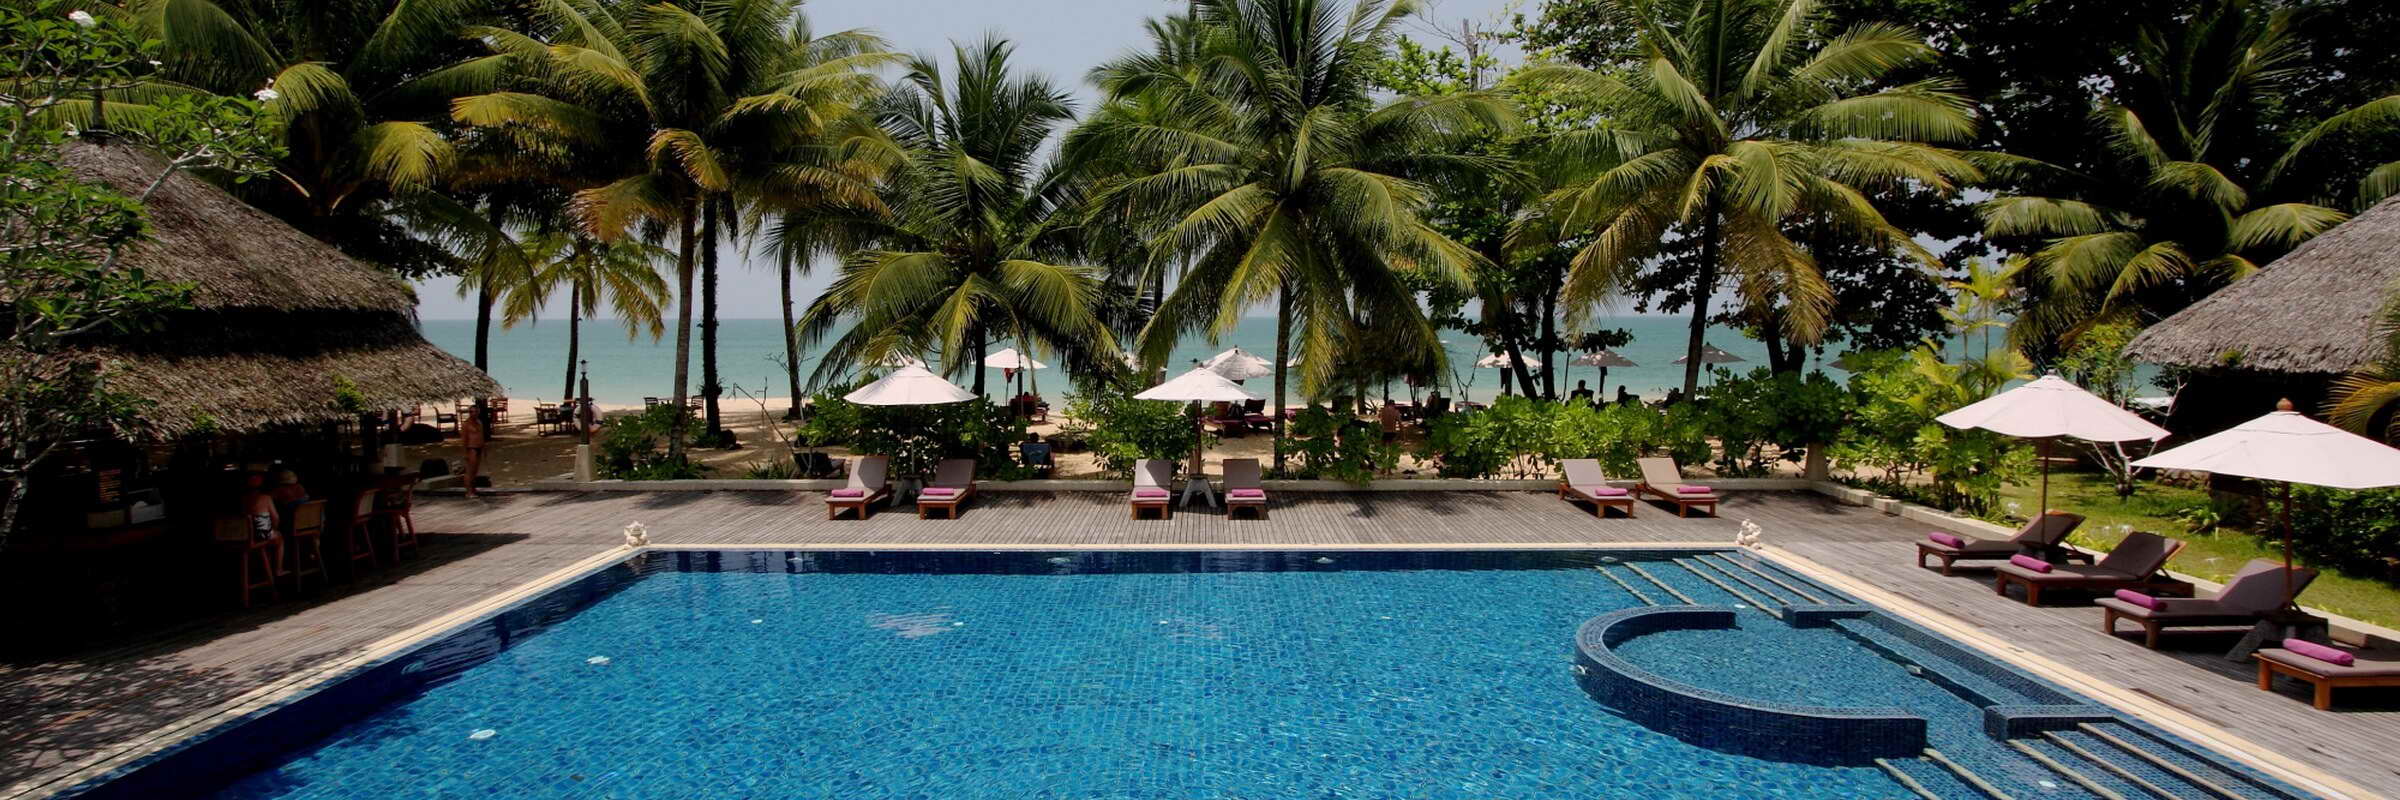 Ein großer Swimmingpool mit Sonnenterrasse lädt im Khaolak Paradise Resort zum Entspannen und Erholen ein.